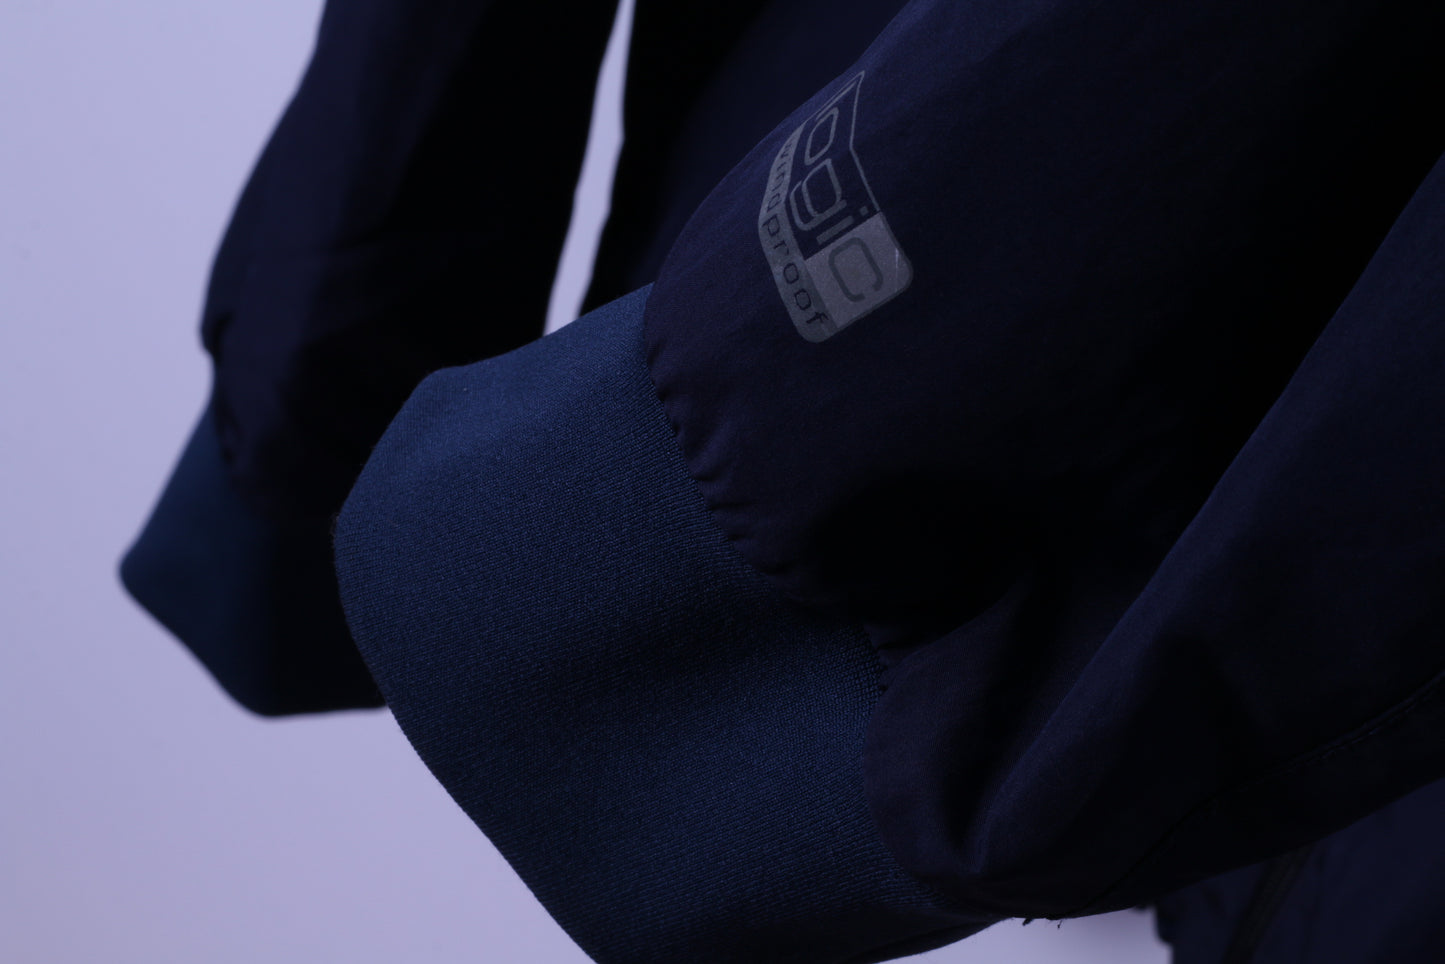 Giacca XXL da uomo ODLO blu scuro leggera con cerniera per abbigliamento sportivo attivo, top antivento